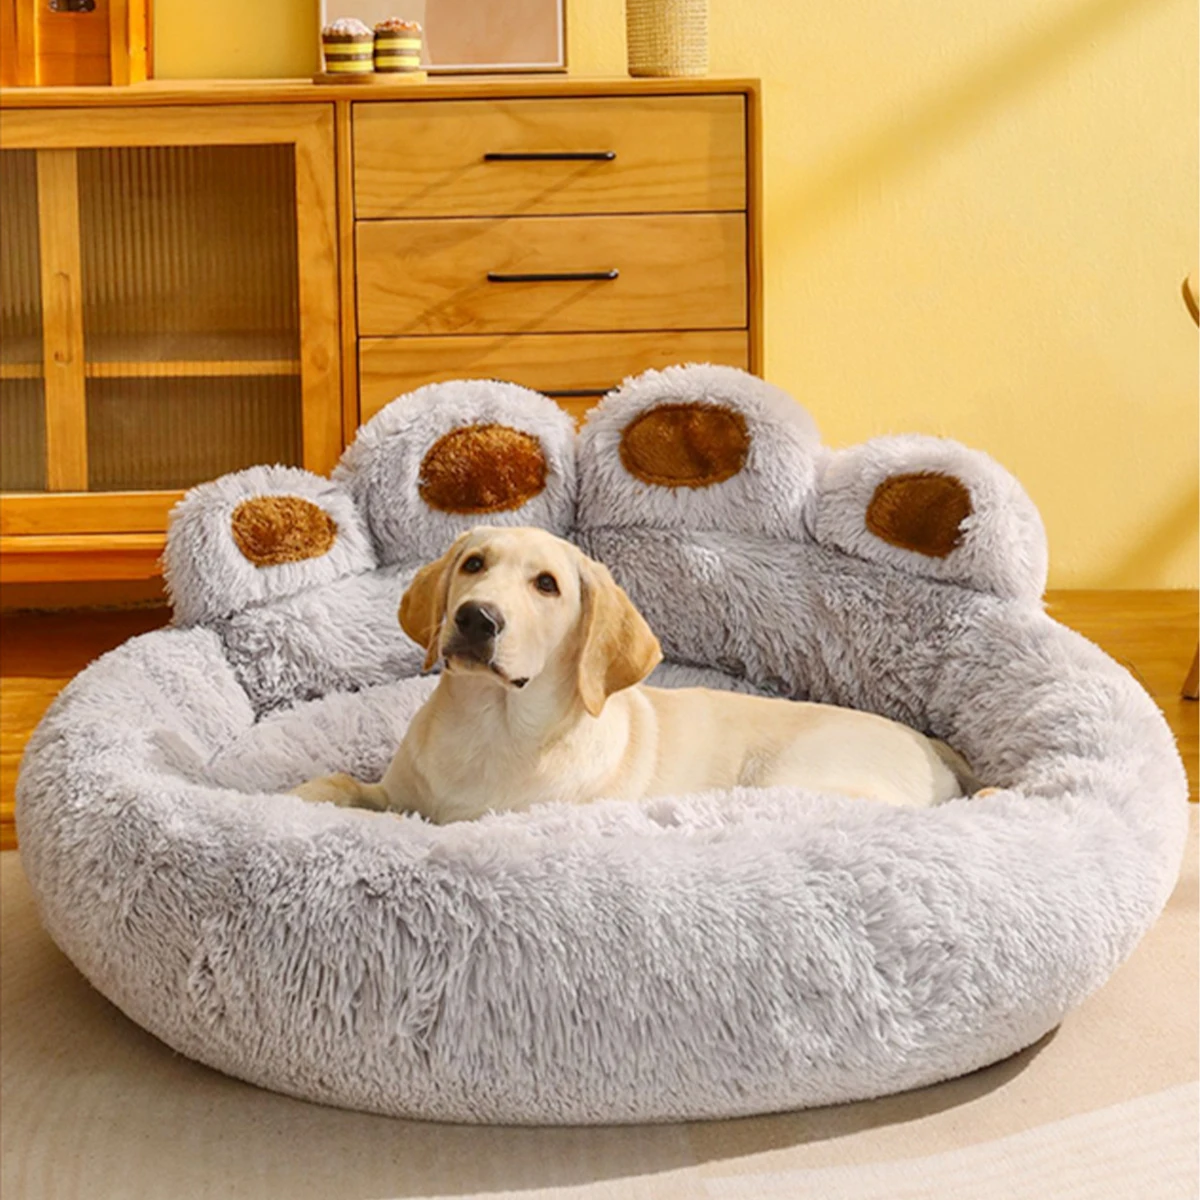 Lits-canap-s-pour-chiens-de-petite-taille-accessoires-chauds-tapis-de-lit-pour-grands-chiens